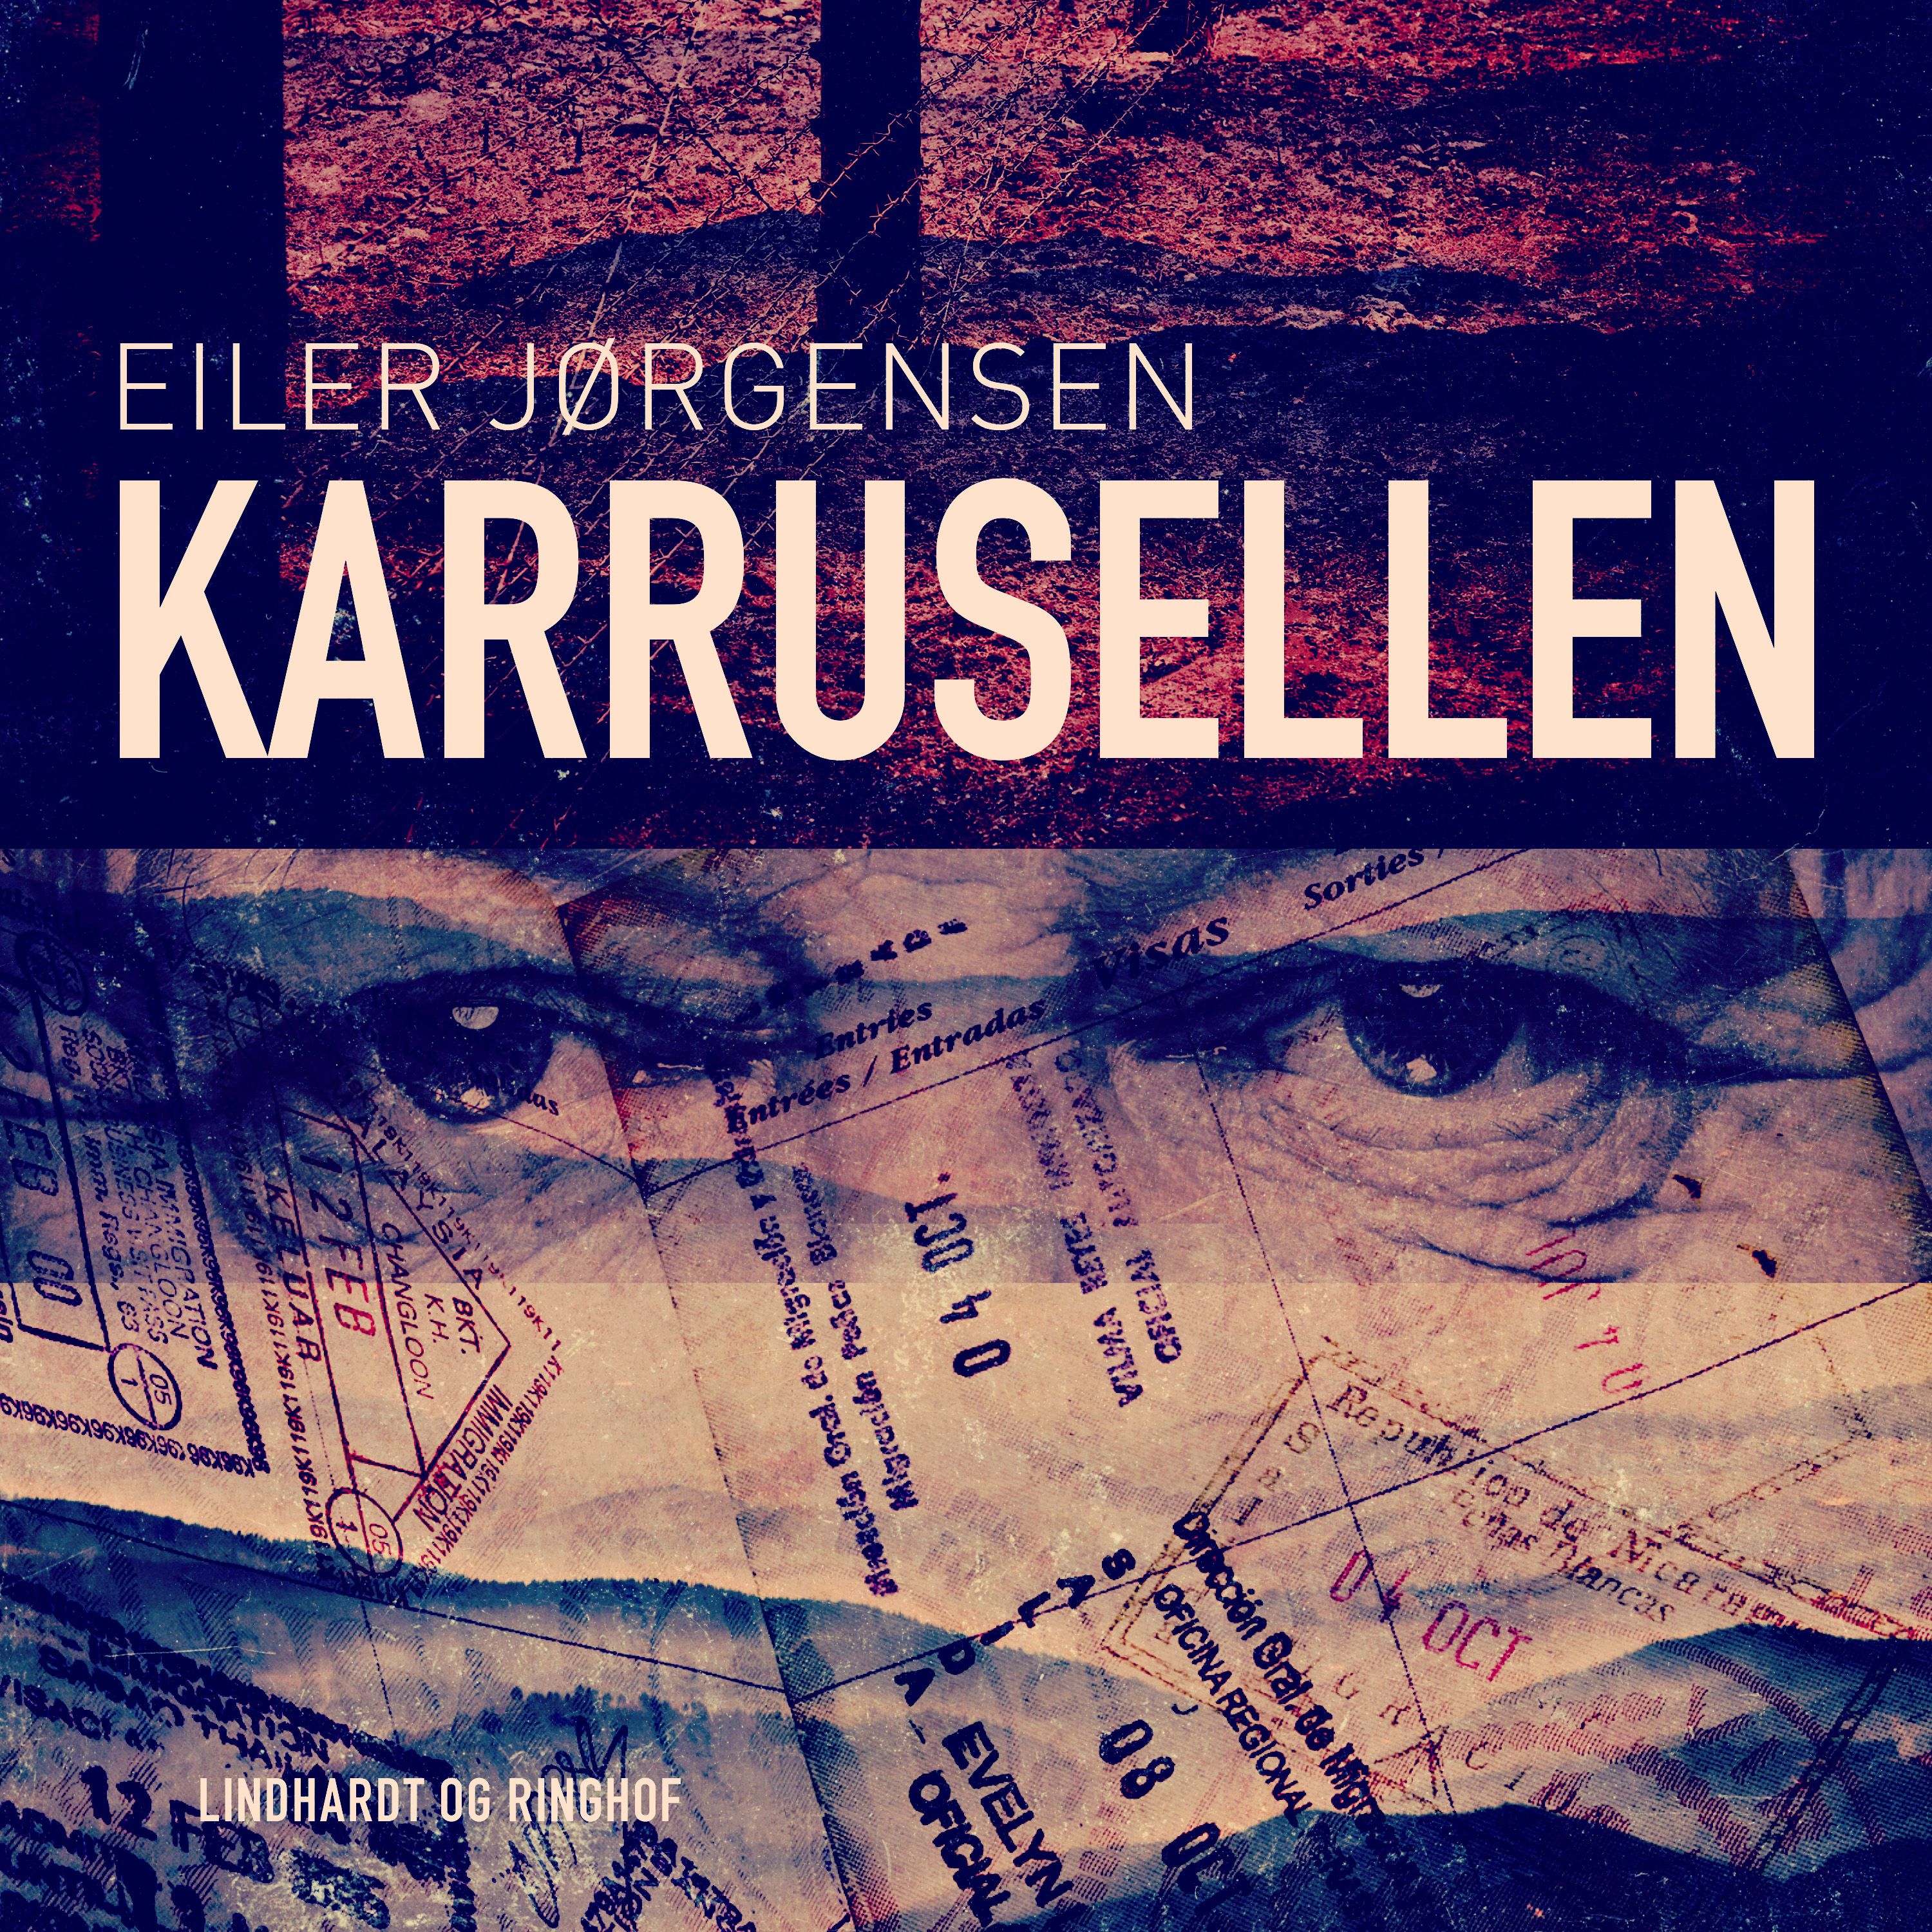 Karrusellen, ljudbok av Eiler Jørgensen